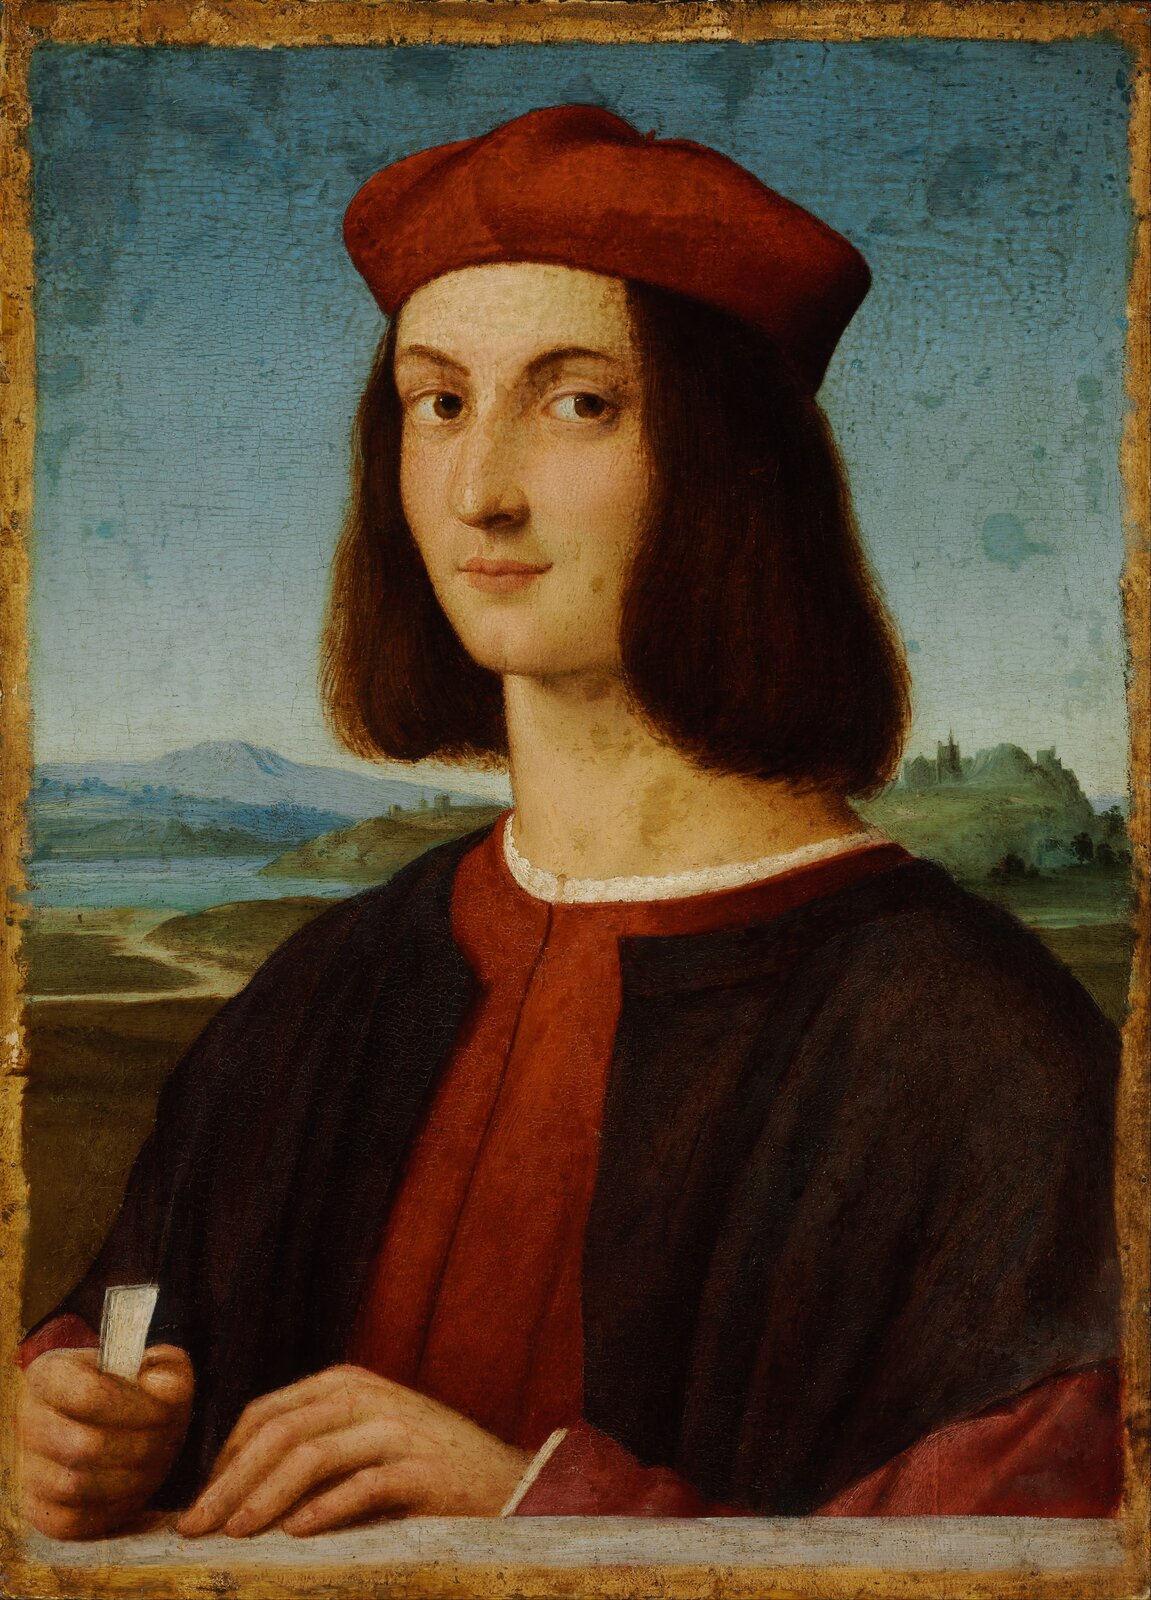 lustracja przedstawia „Portret Pietra Bembo” Rafaela Santiego. Mężczyzna na czerwone nakrycie głowy, ubrany jest z czerwony strój i ciemnobordową narzutę, Dłonie oparte ma na parapecie , w prawej trzyma zwiniętą kartkę. Tło wypełnia niski pejzaż z krętą drogą i górami.